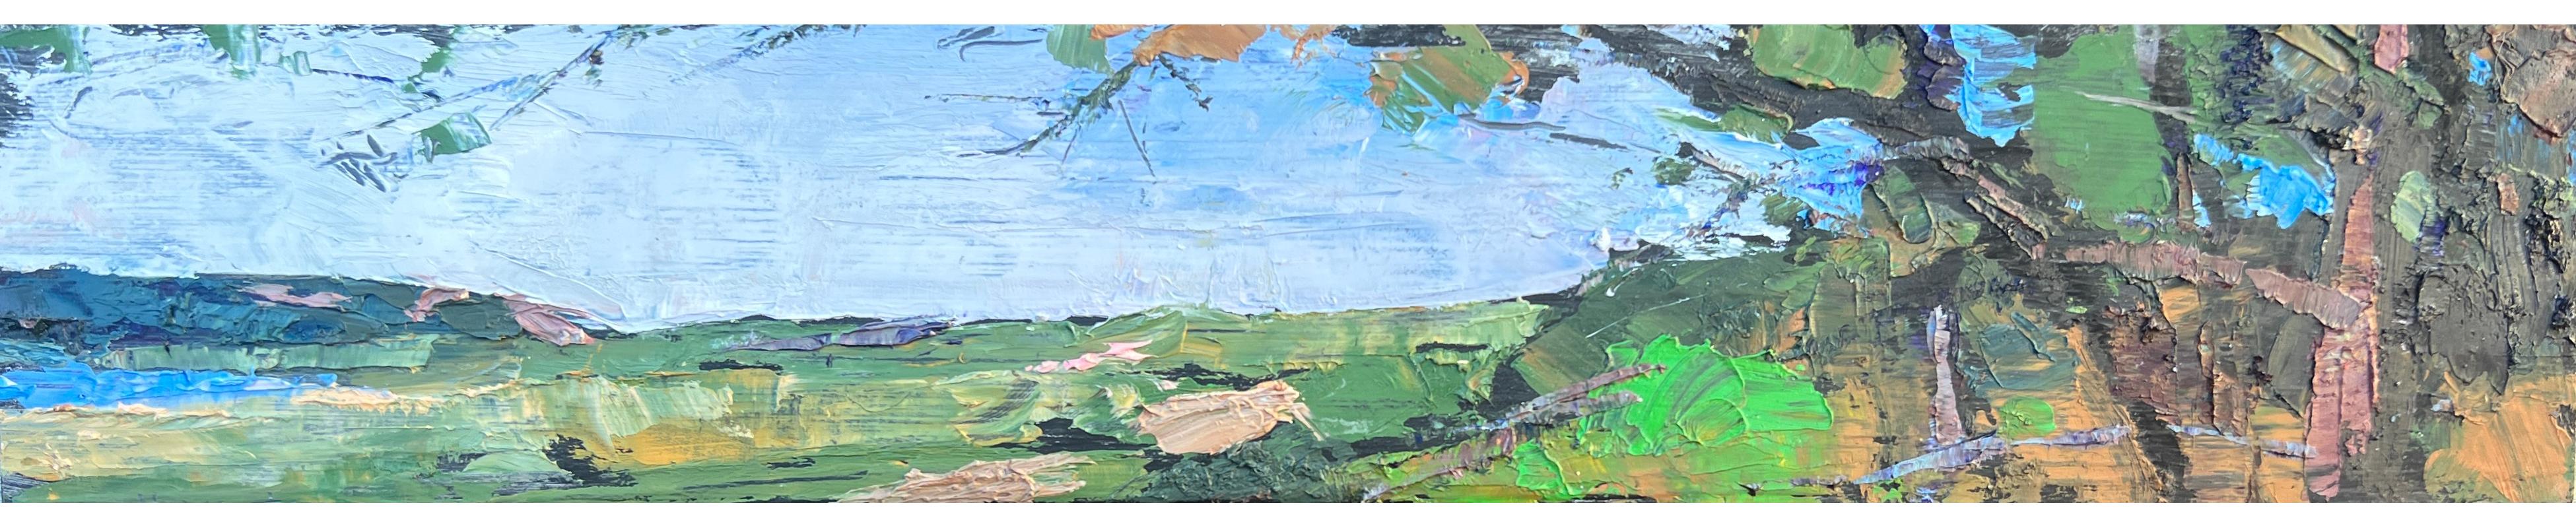 Larry Horowitz Landscape Painting - "Panorama" small scale panoramic landscape oil painting 